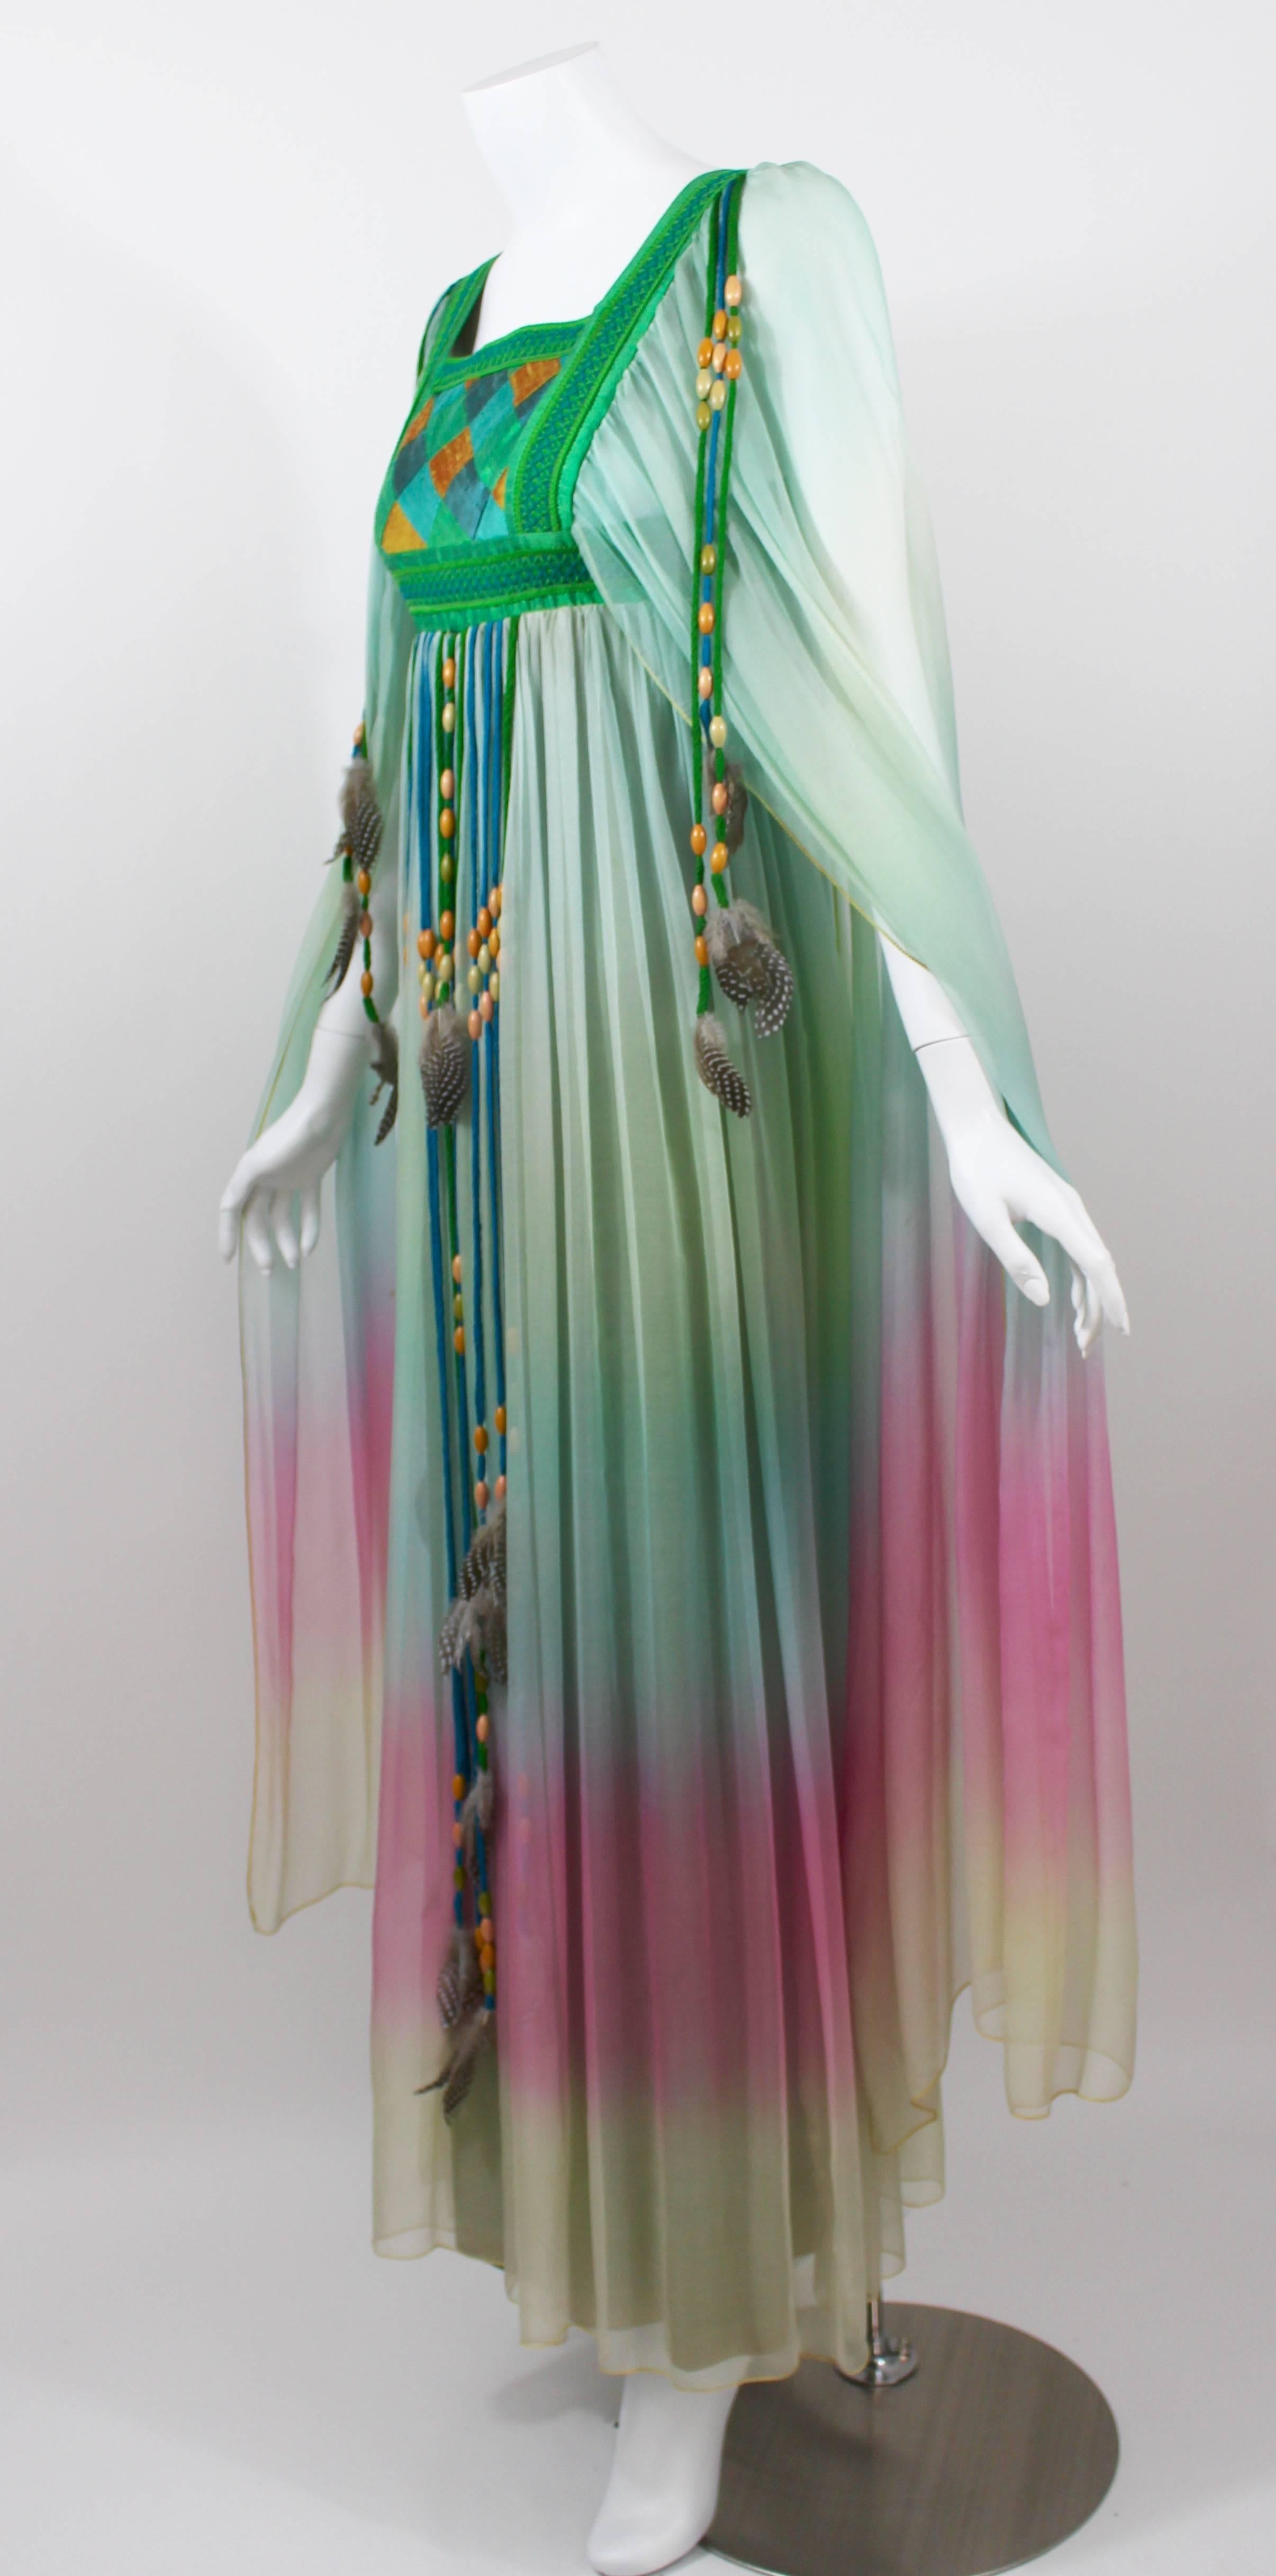 Robe de mariée en mousseline de soie dégradée Gina Fratini Elizabeth Taylor documentée 1975 1